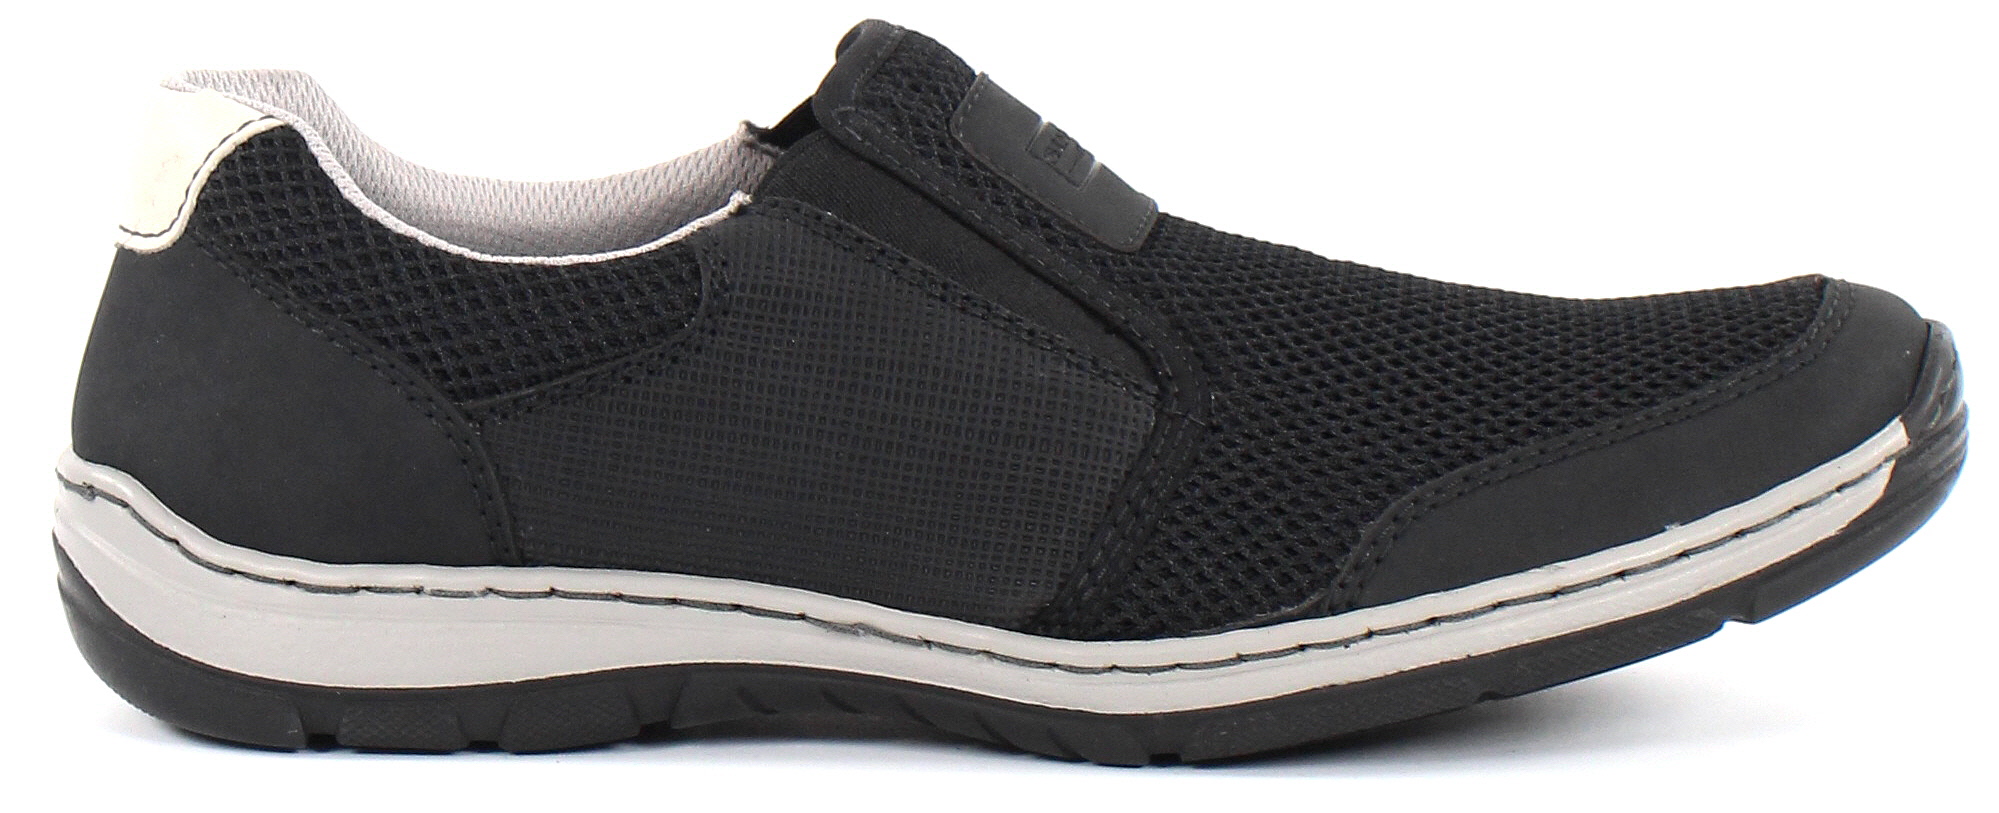 Rieker Walking Shoes 15253-01, Black - Stilettoshop.eu webstore